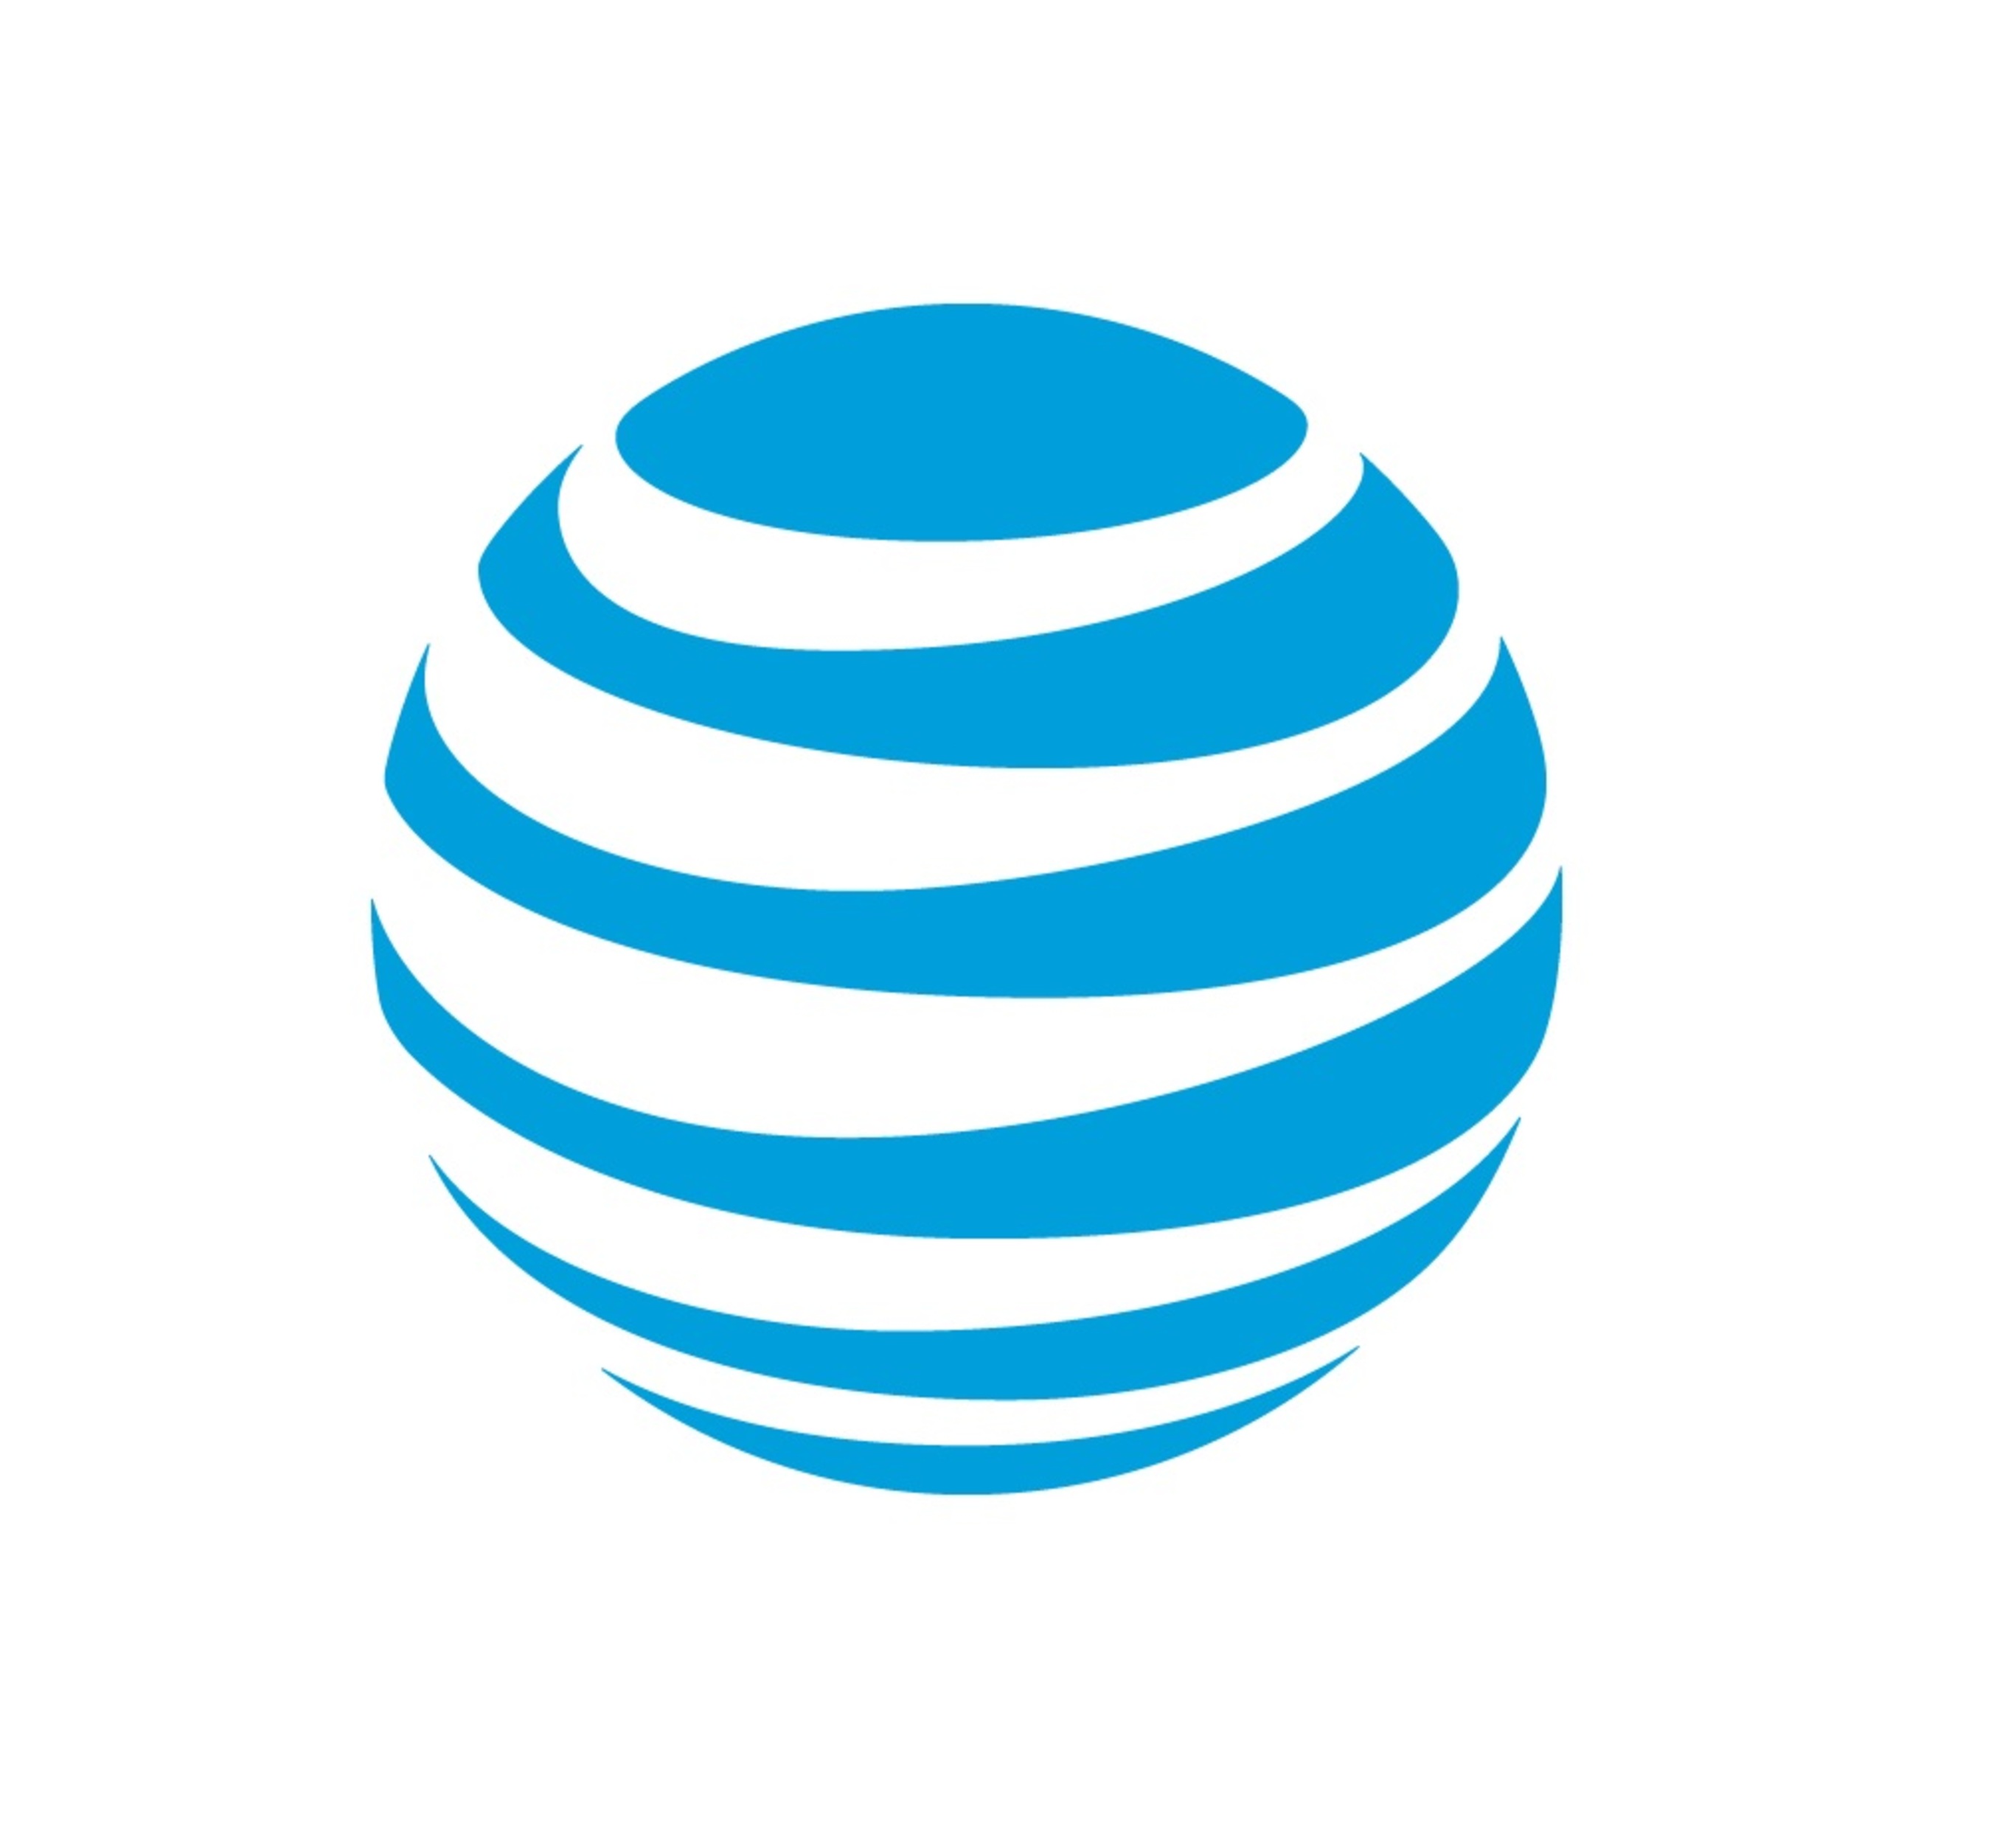 AT&T Inc. logo.